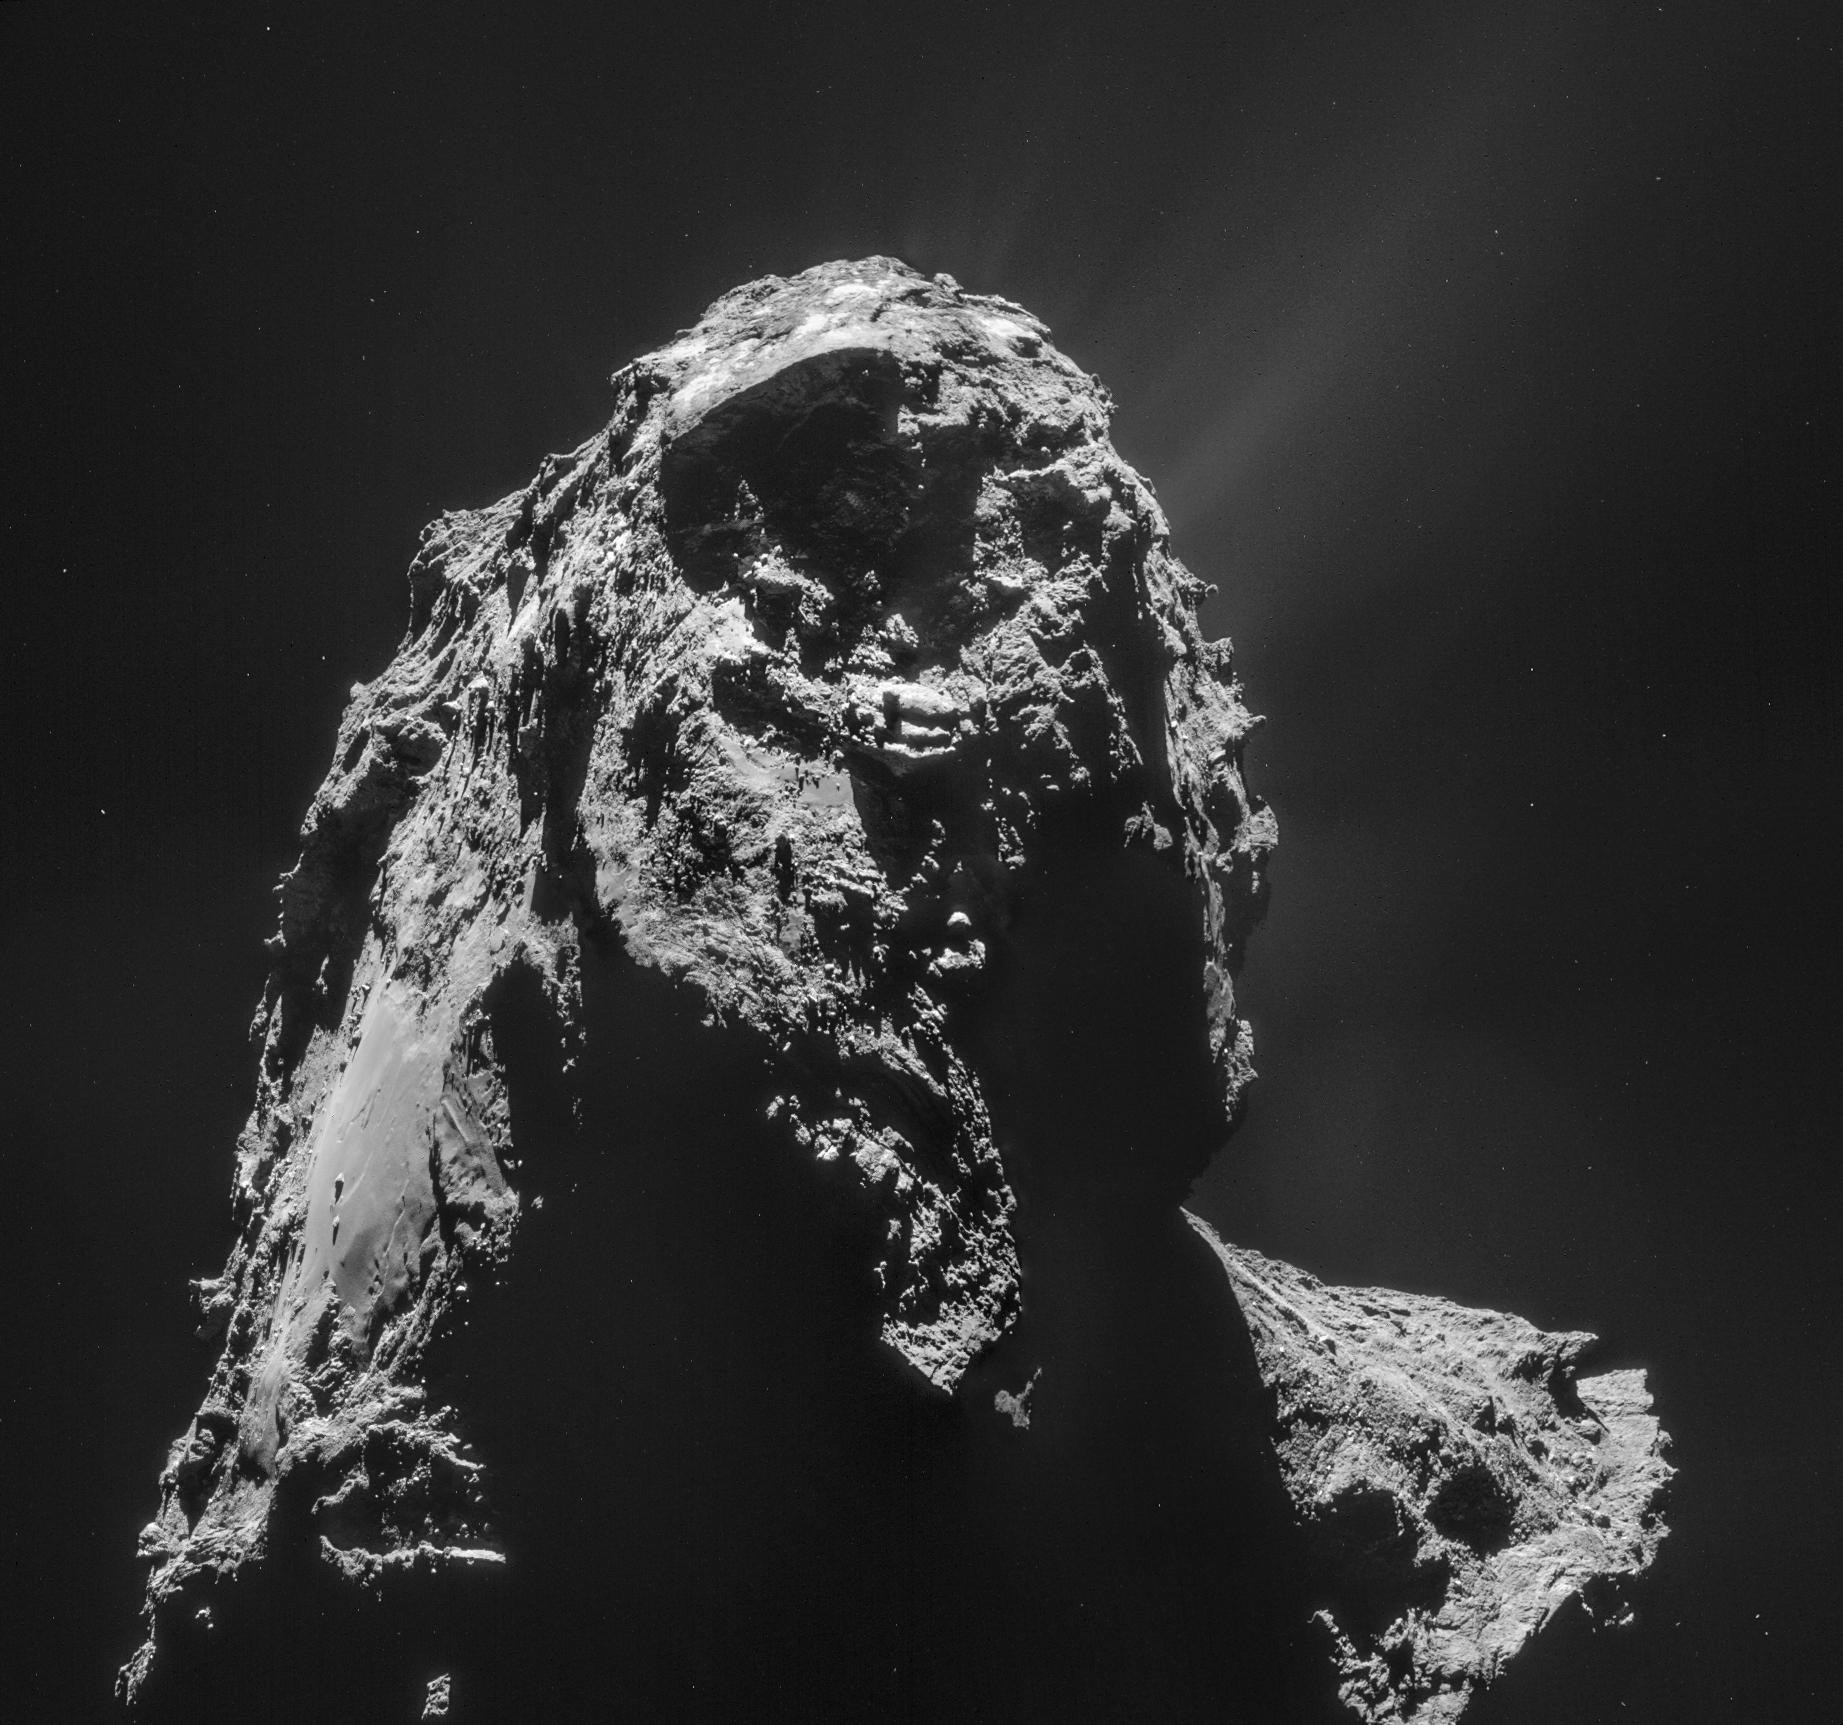 Der Komet am 16. Januar 2015